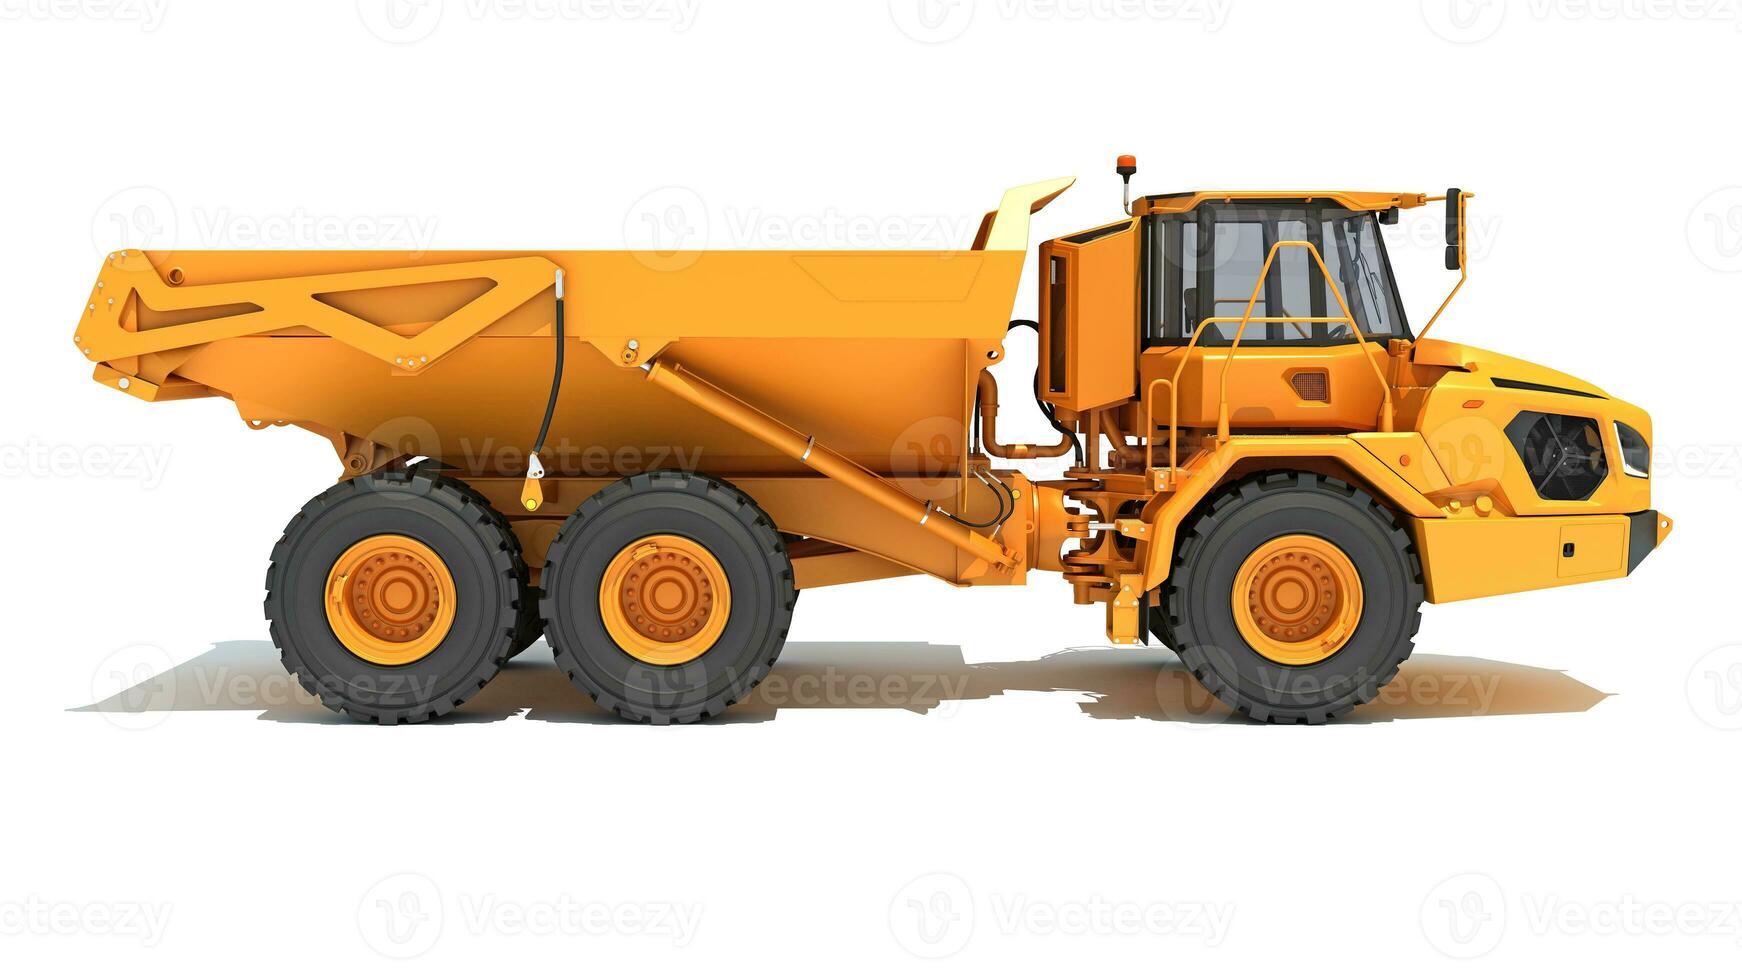 brytning dumpa lastbil tung konstruktion maskineri 3d tolkning på vit bakgrund foto